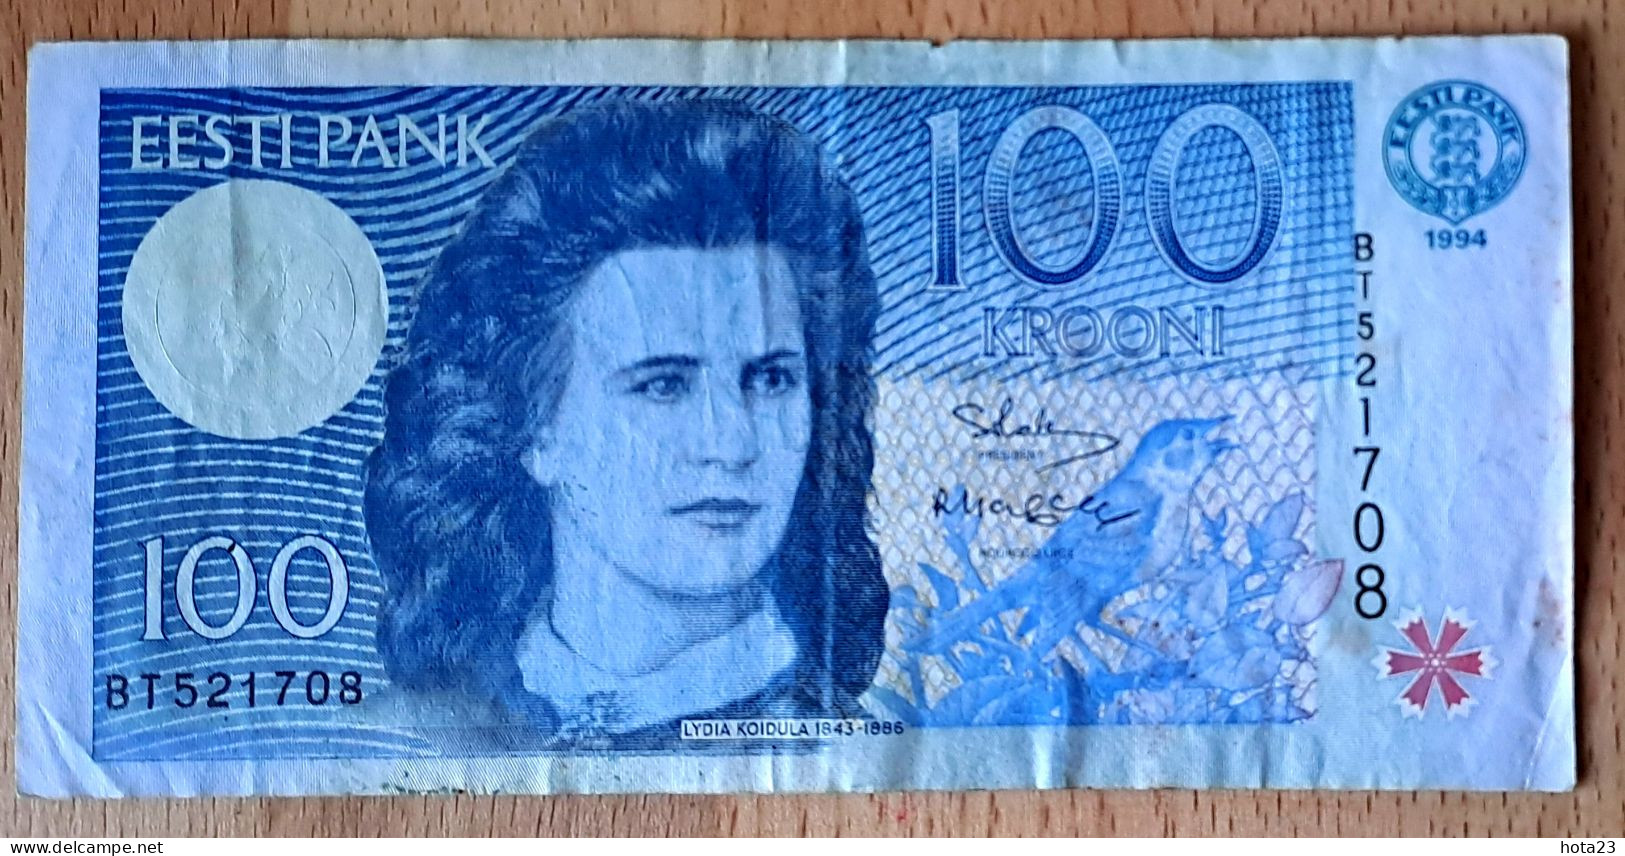 (!)  1994 ESTONIA , Estland  100 KROONI P79  EURO CUCKOO BIRD Circulated - Estland